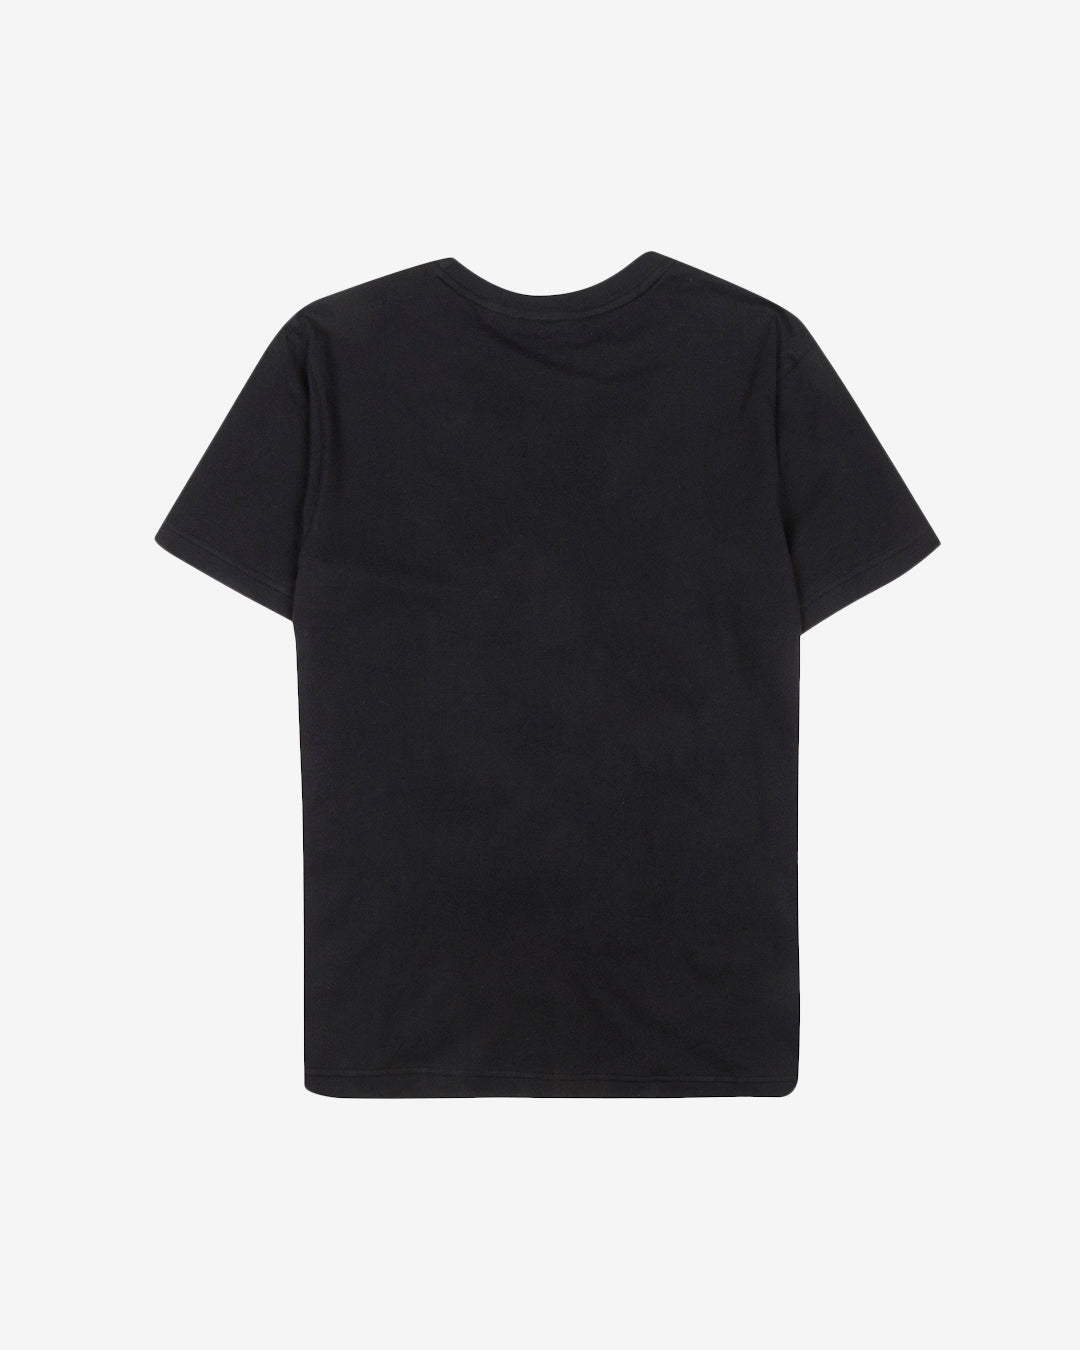 PFC: 002-1 - Womens T-Shirt - Onyx Black